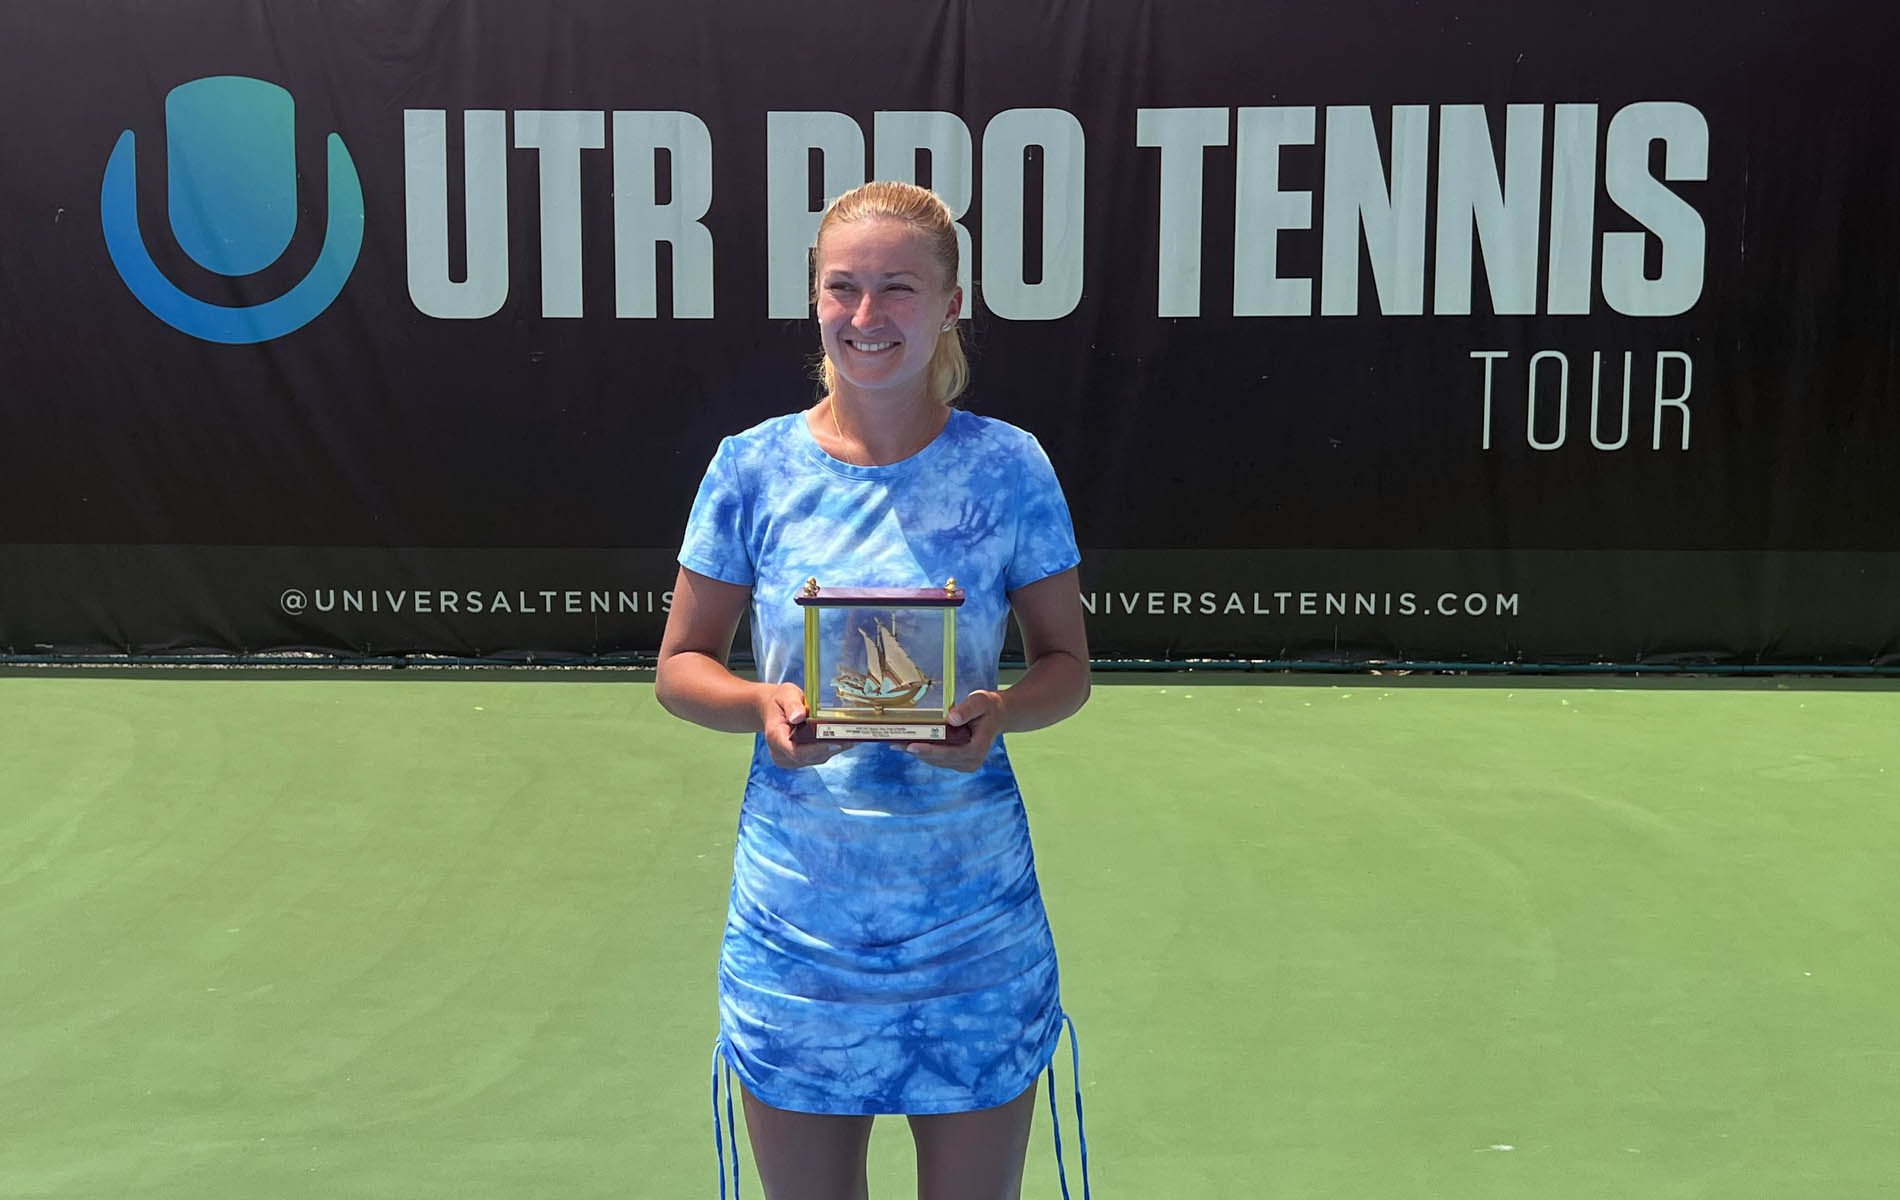 Dubai Adds More UTR Pro Tennis Tour, Enhances Pro Tennis in United Ara